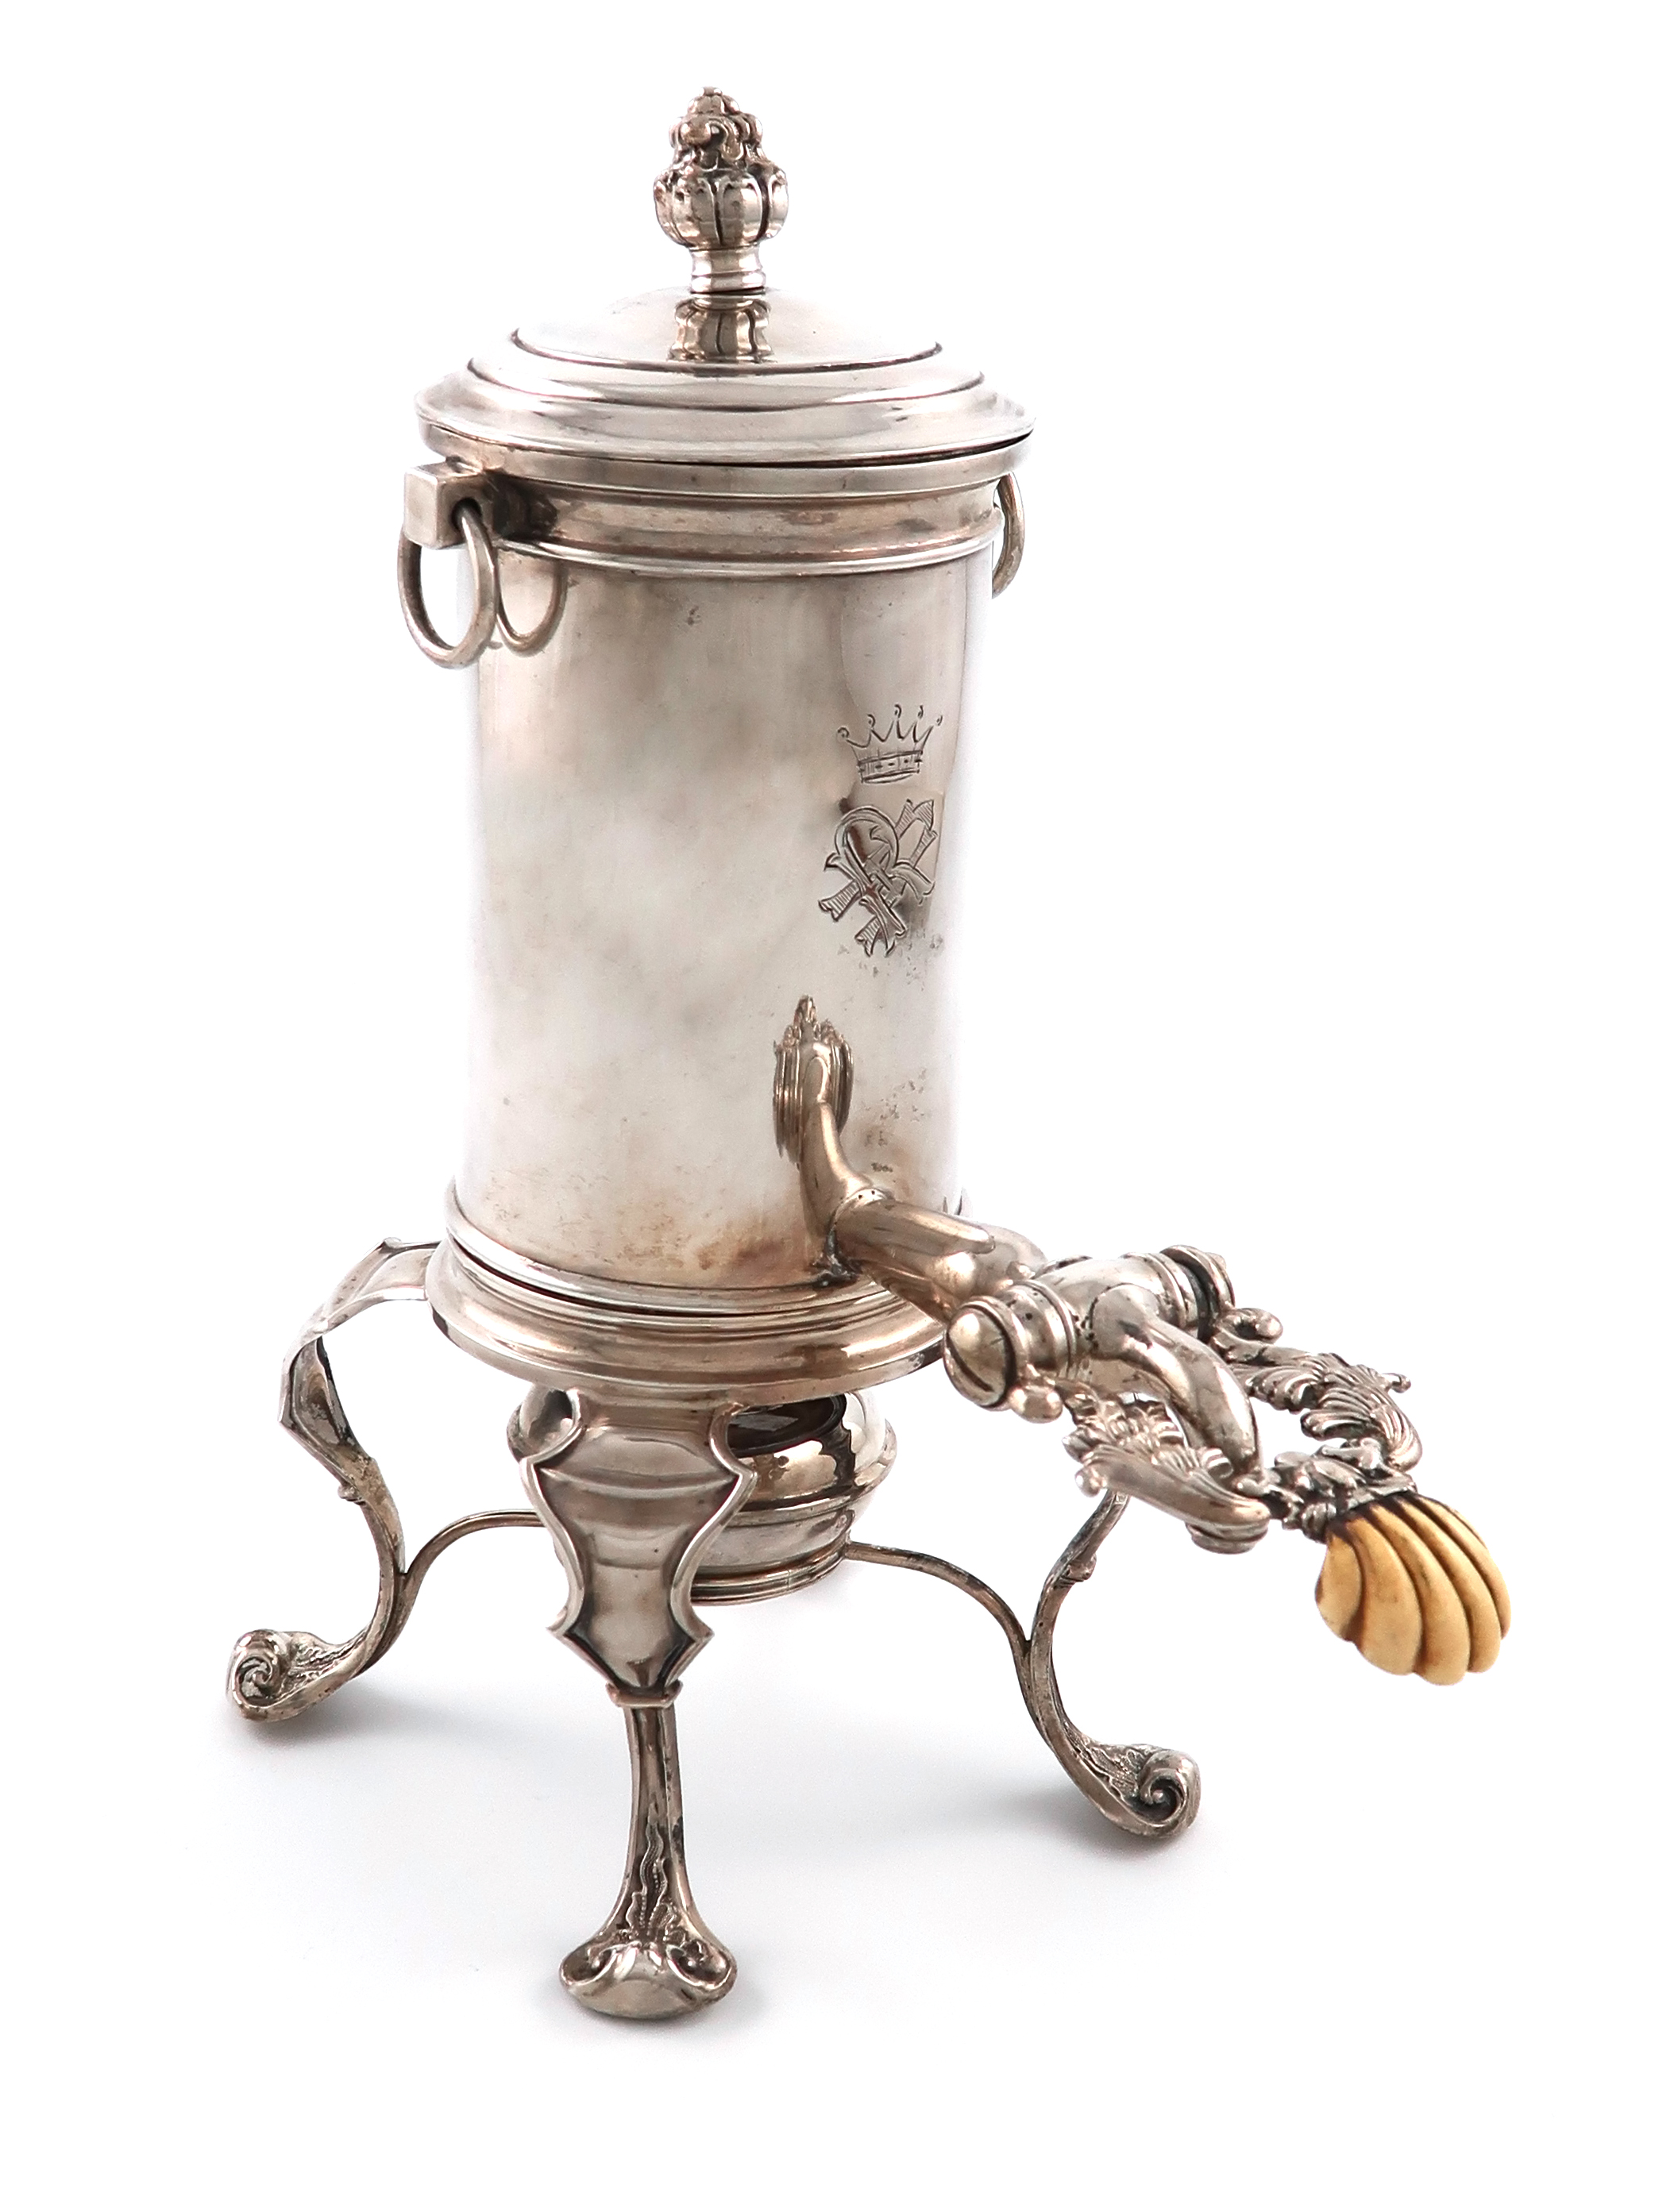 λA 19th century Austro-Hungarian small silver coffee urn, by Mayerhofer and Klinkosch, Vienna